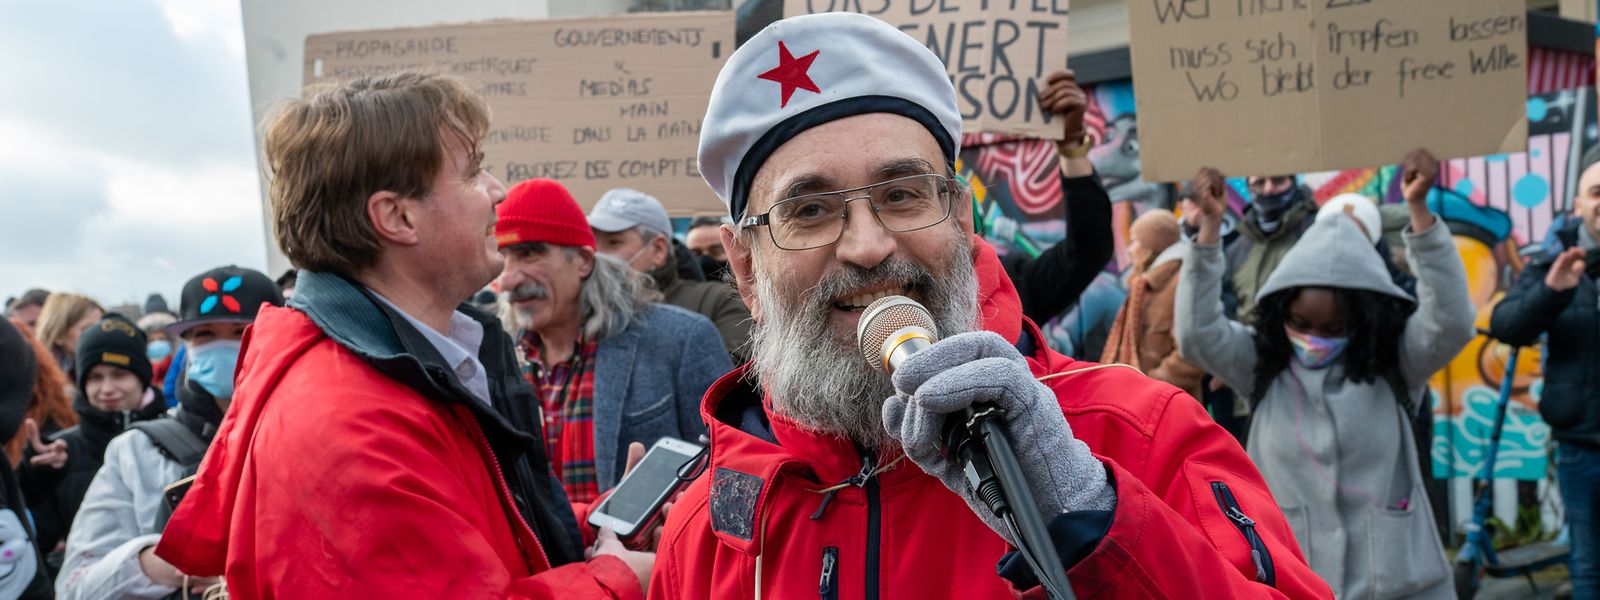 Jean-Marie Jacoby organisiert seit November 2020 wöchentlich Demonstrationen in der Hauptstadt. 